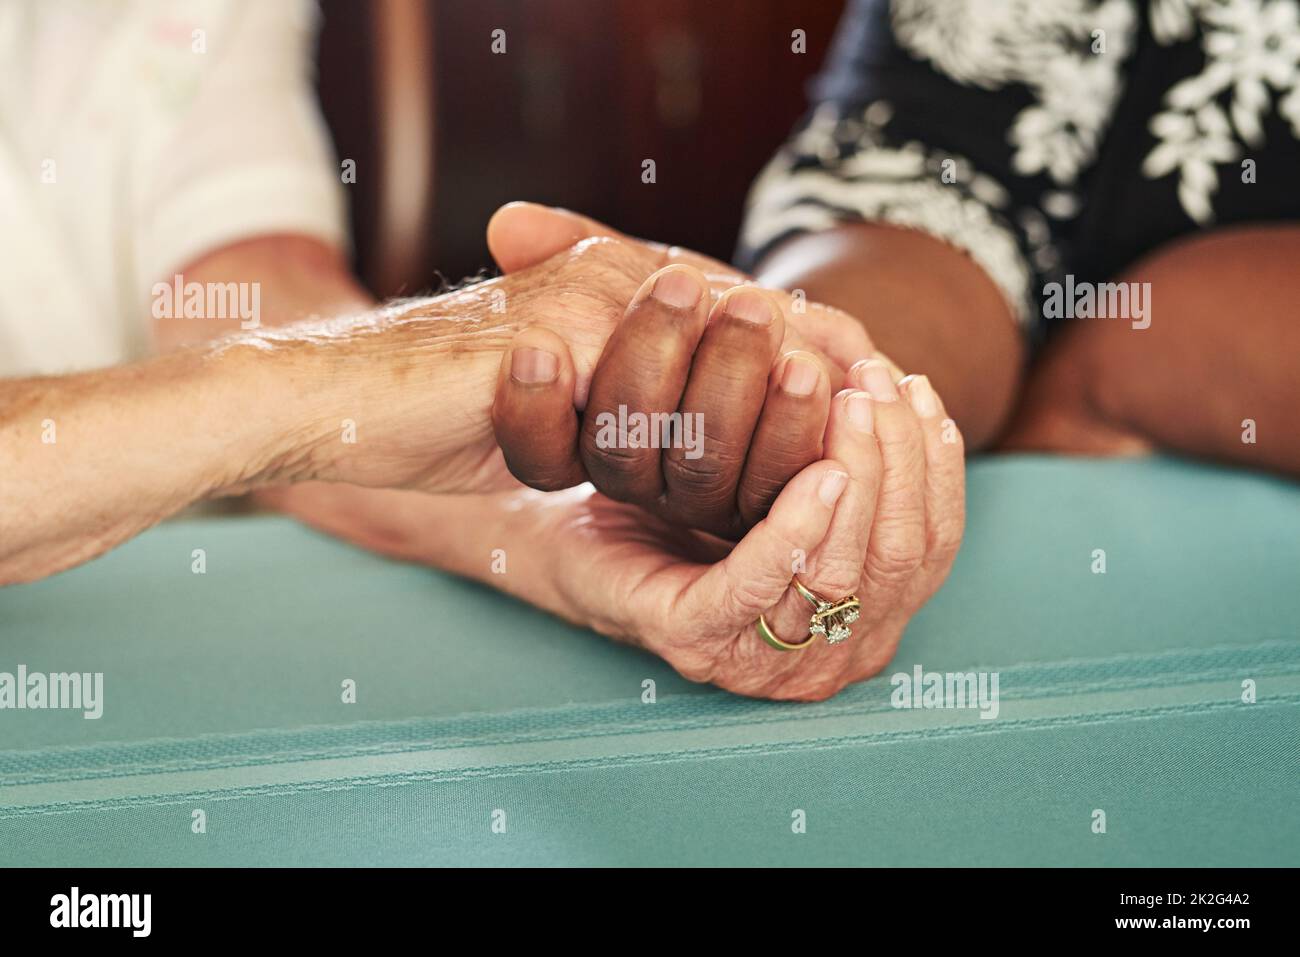 Le mani utili sono mani piene di speranza. Scatto corto di una donna anziana che tiene le mani dei suoi amici in comodità. Foto Stock